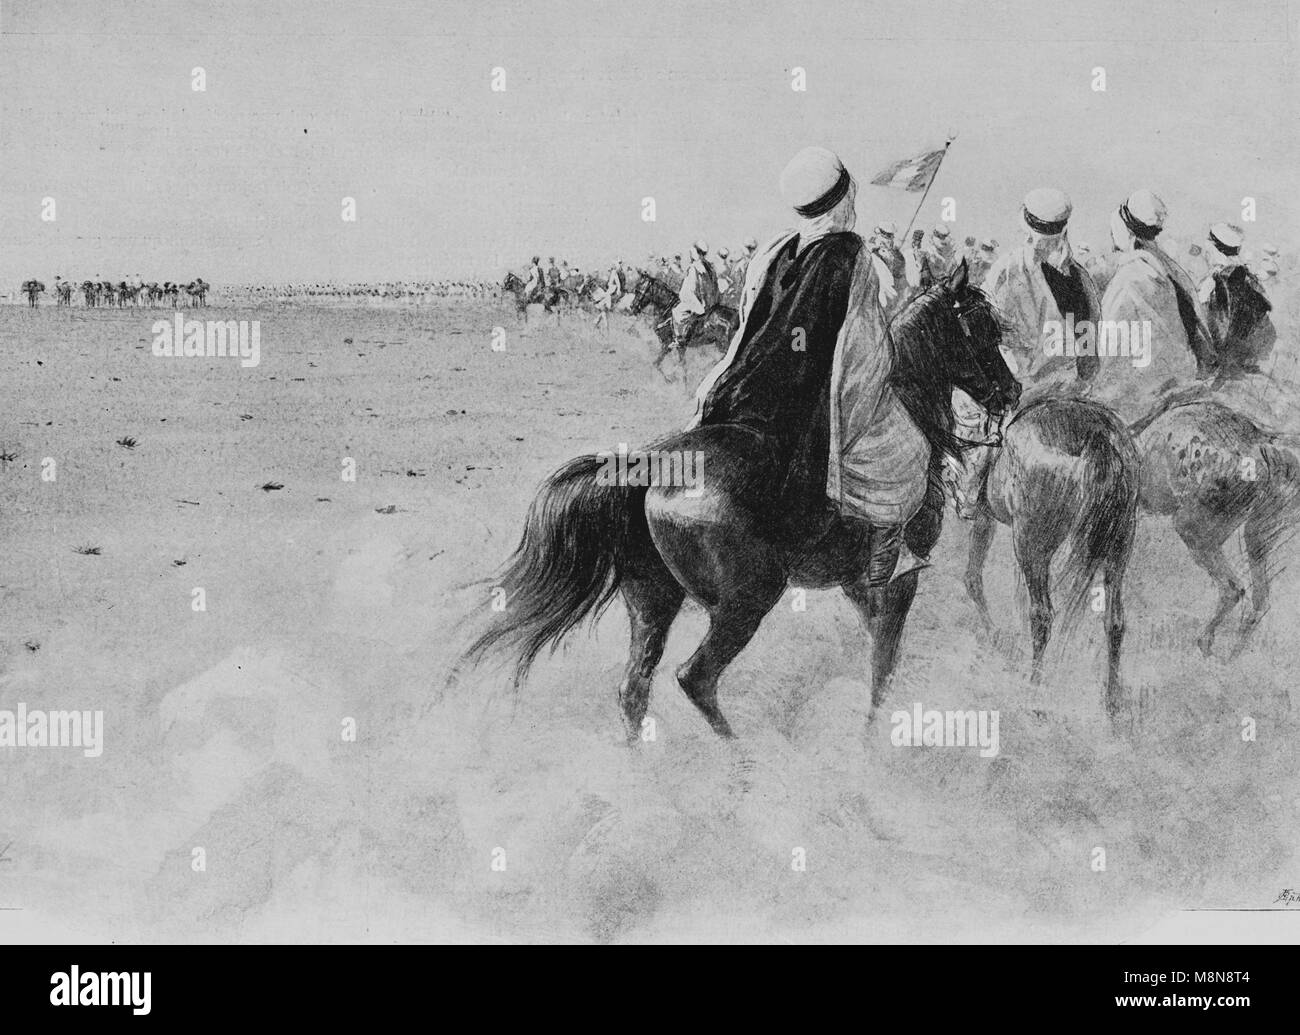 Expédition Foureau-Lamy Français au Tchad en 1900, Expédition caravane, Photo de l'hebdomadaire français journal l'illustration, le 9 septembre 1900 Banque D'Images